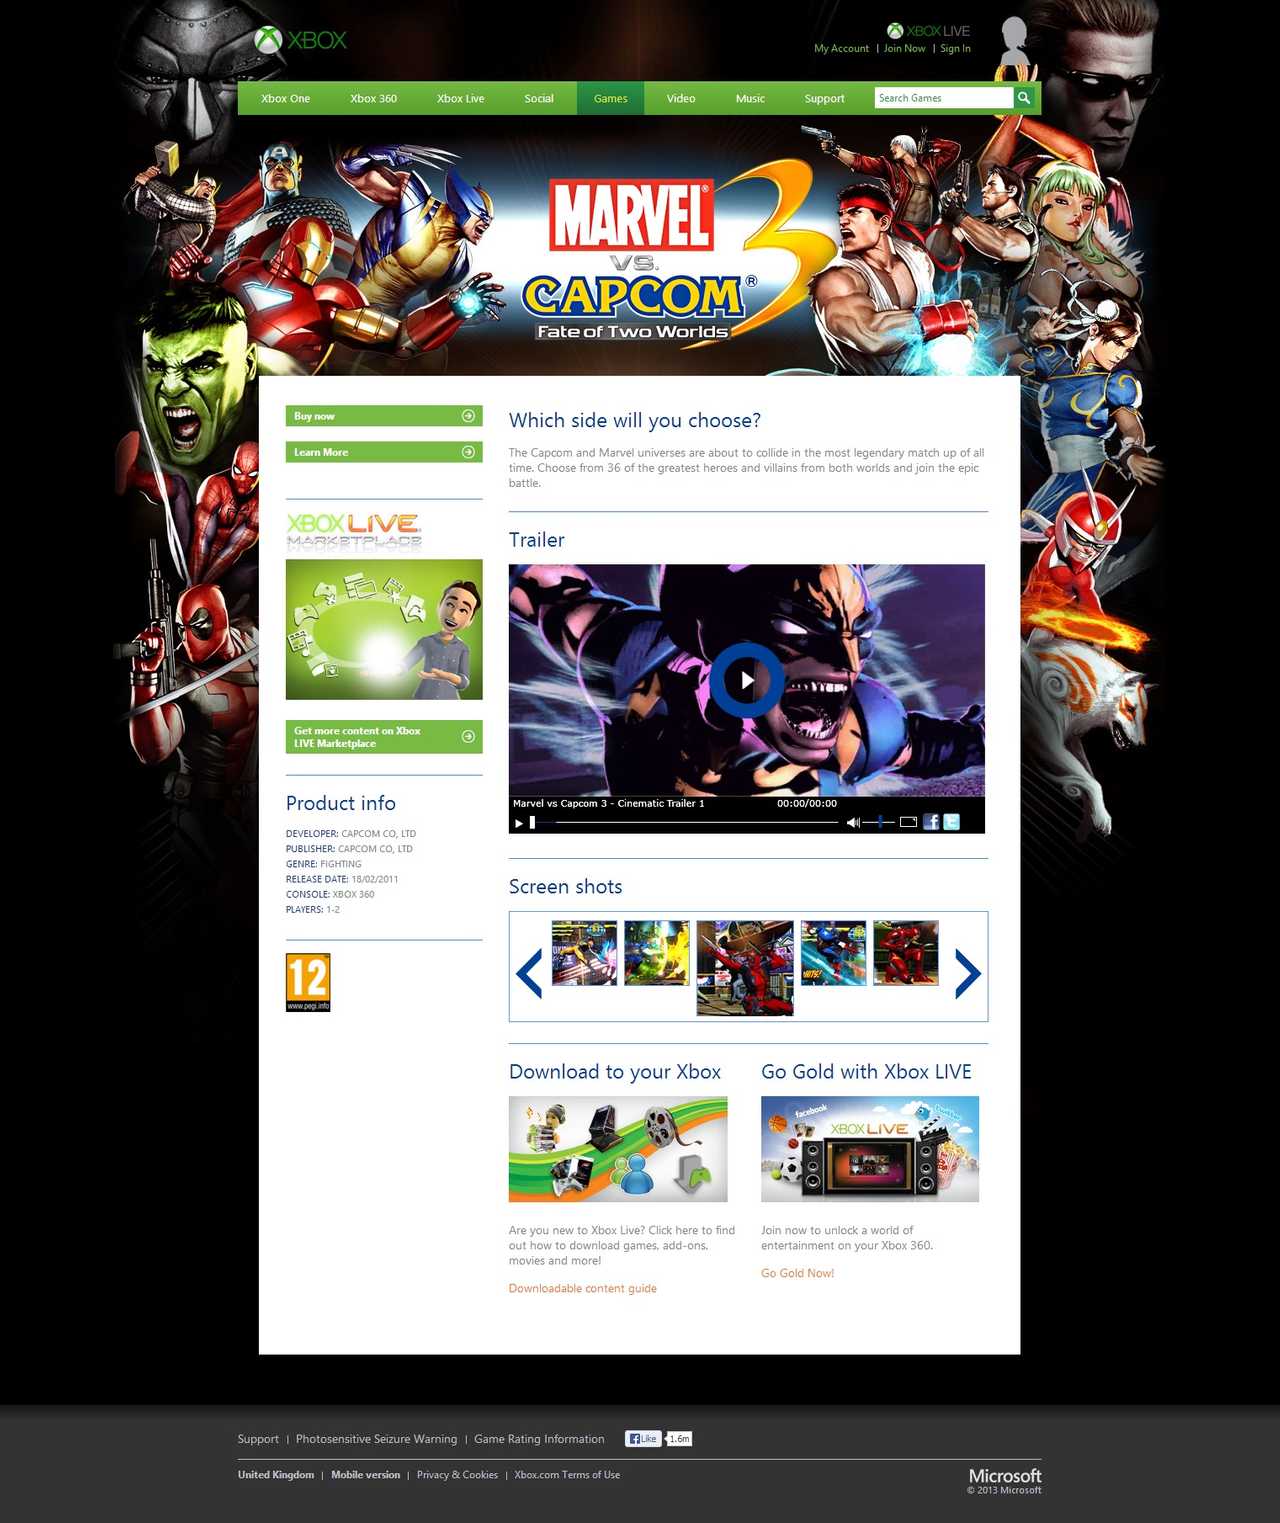 Xbox.com - Marvel vs. Capcom 3